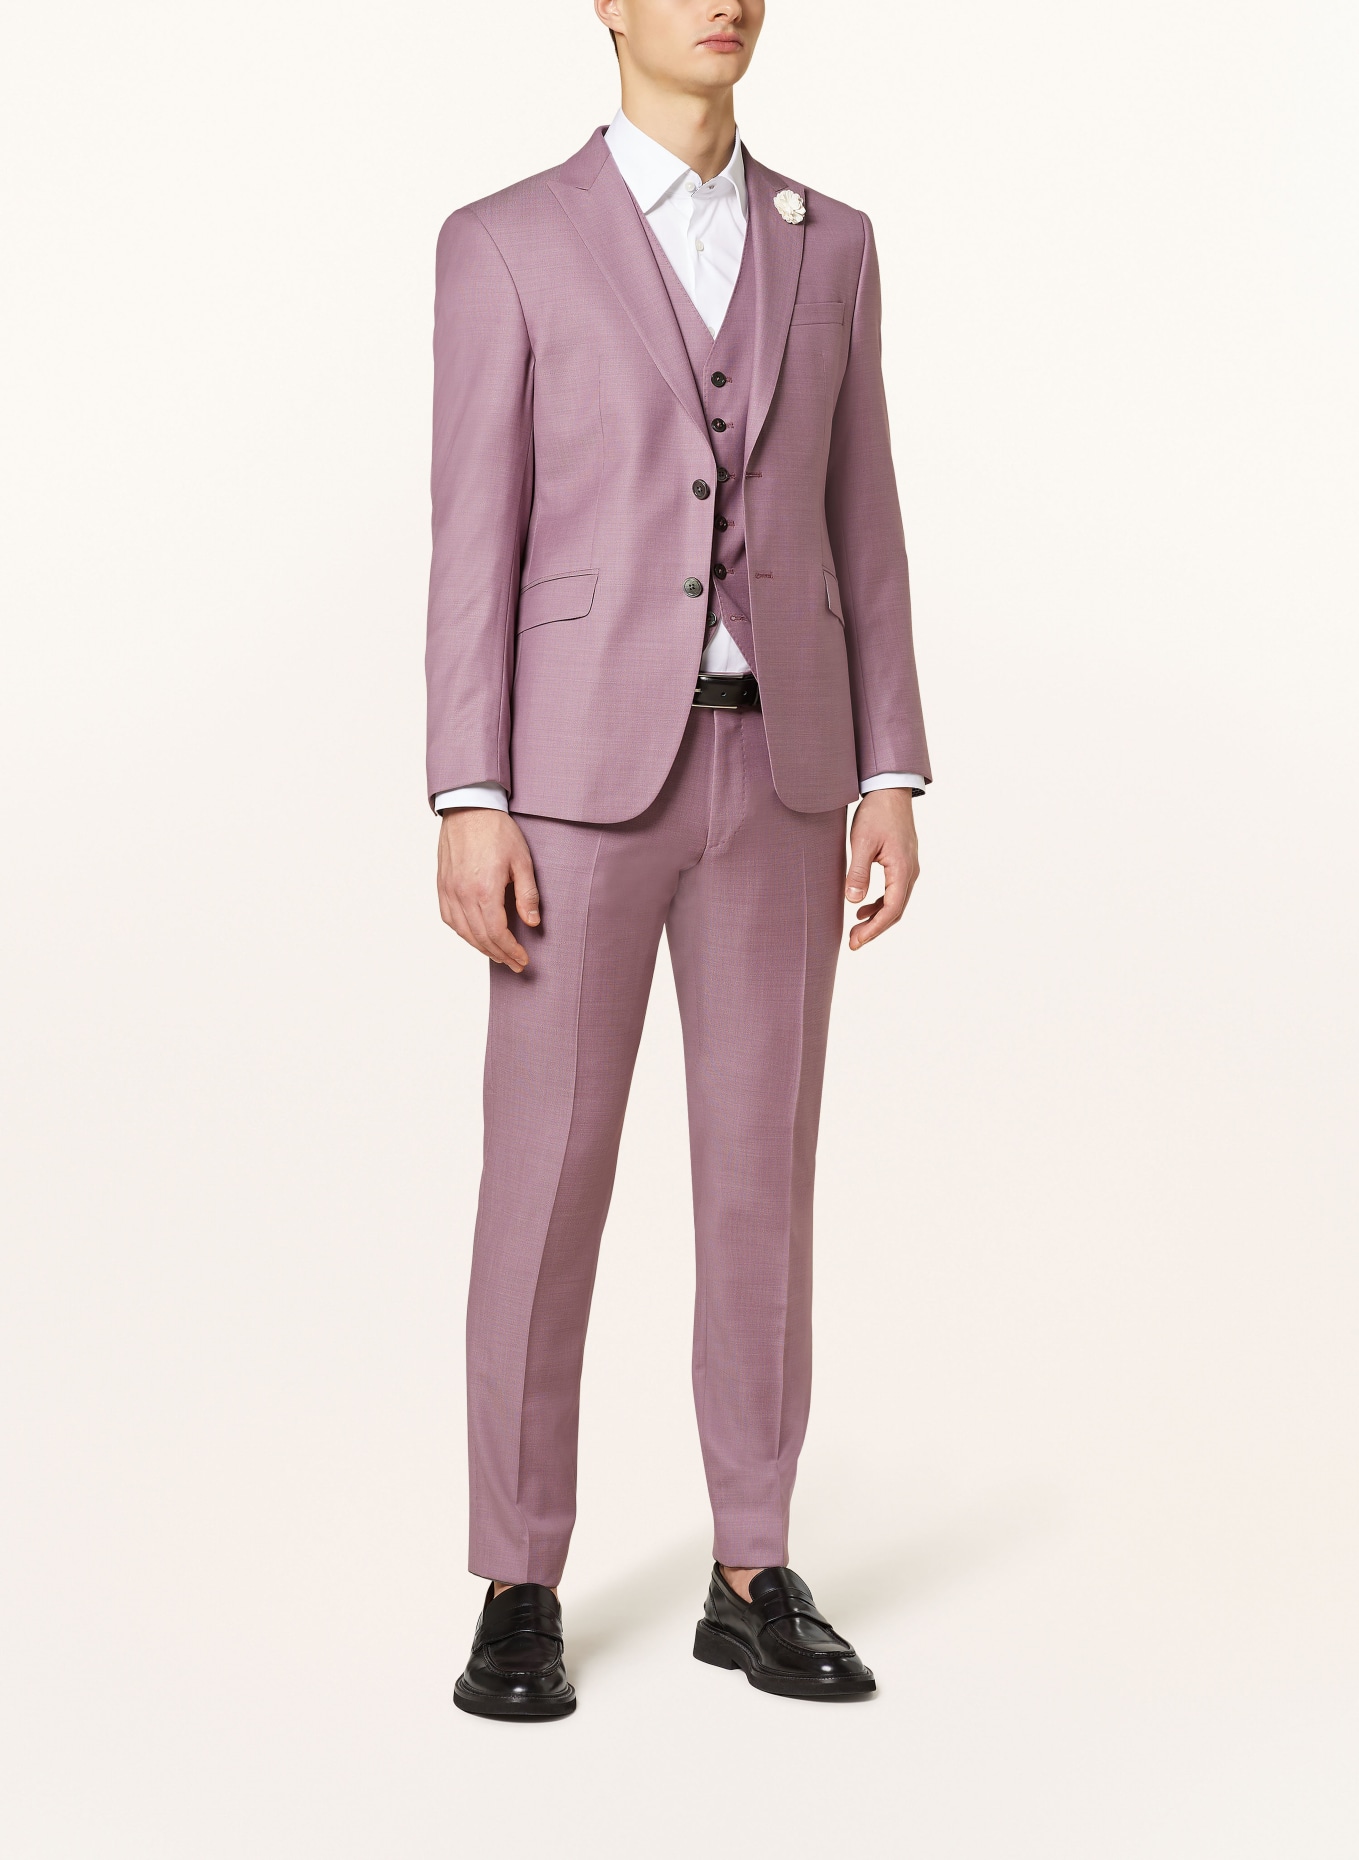 JOOP! Suit trousers BLAYR slim fit, Color: 650 Dark Pink                  650 (Image 2)